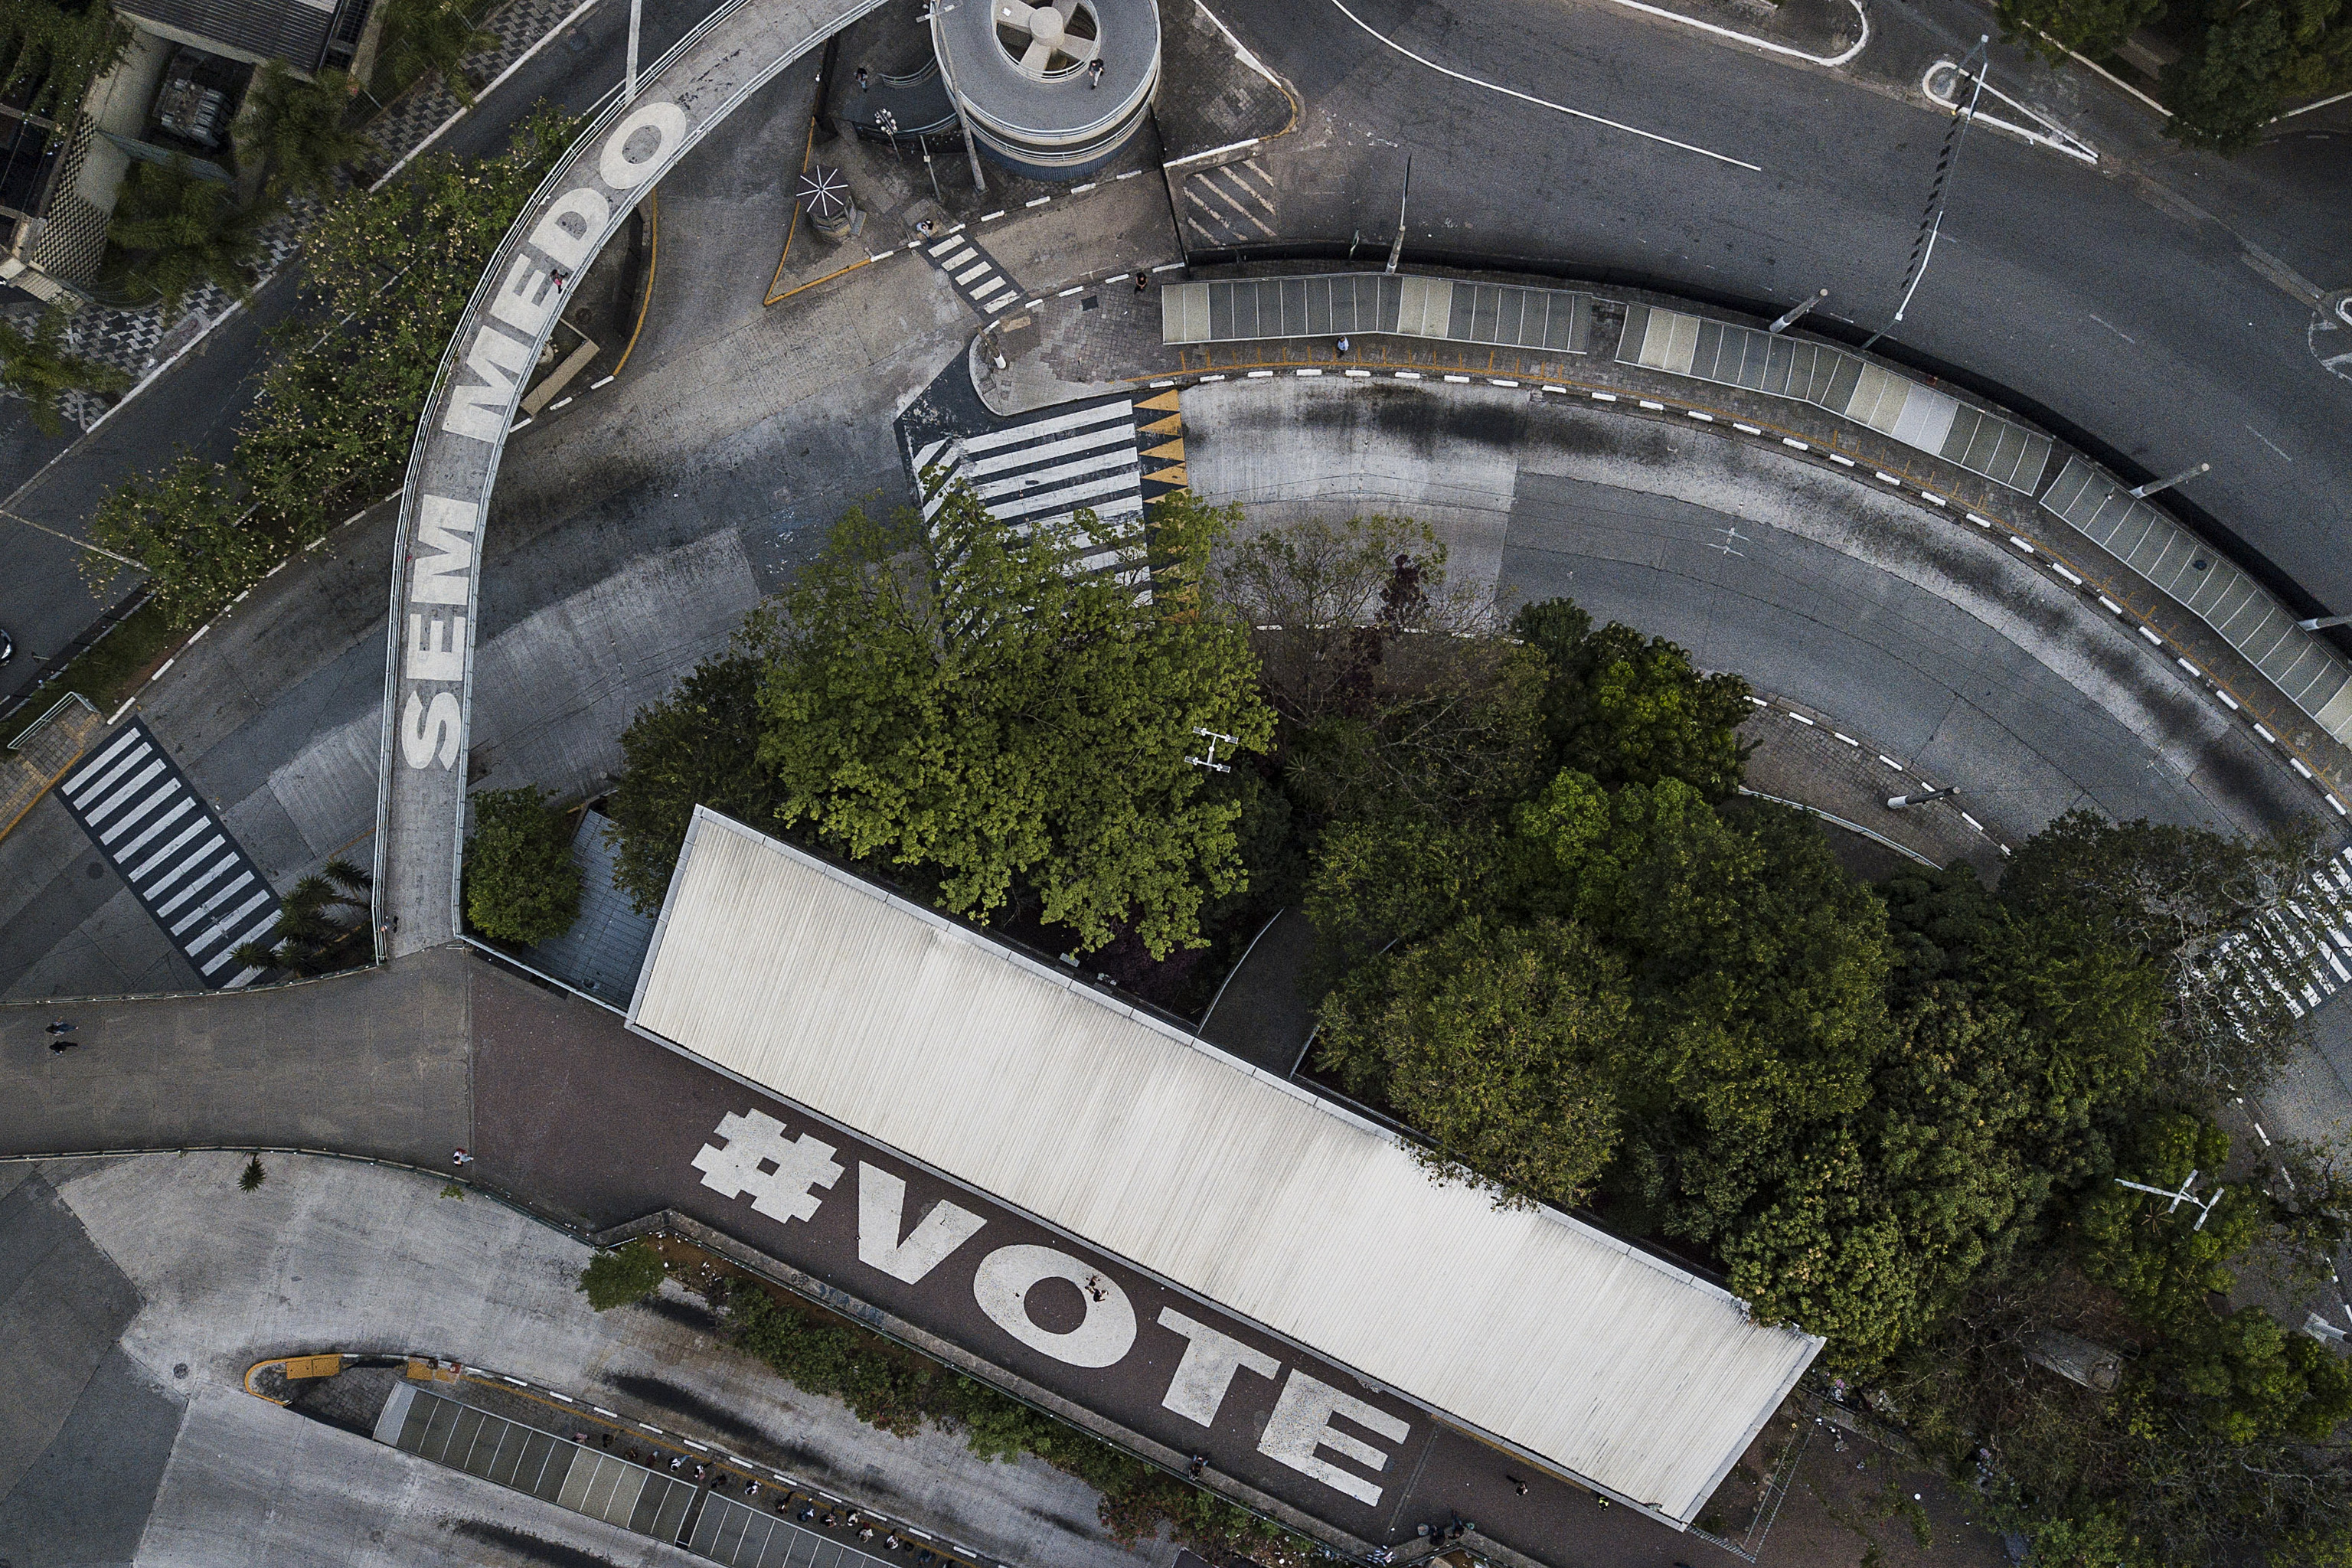 La frase "Sin miedo, vota" en un puente de So Paolo.